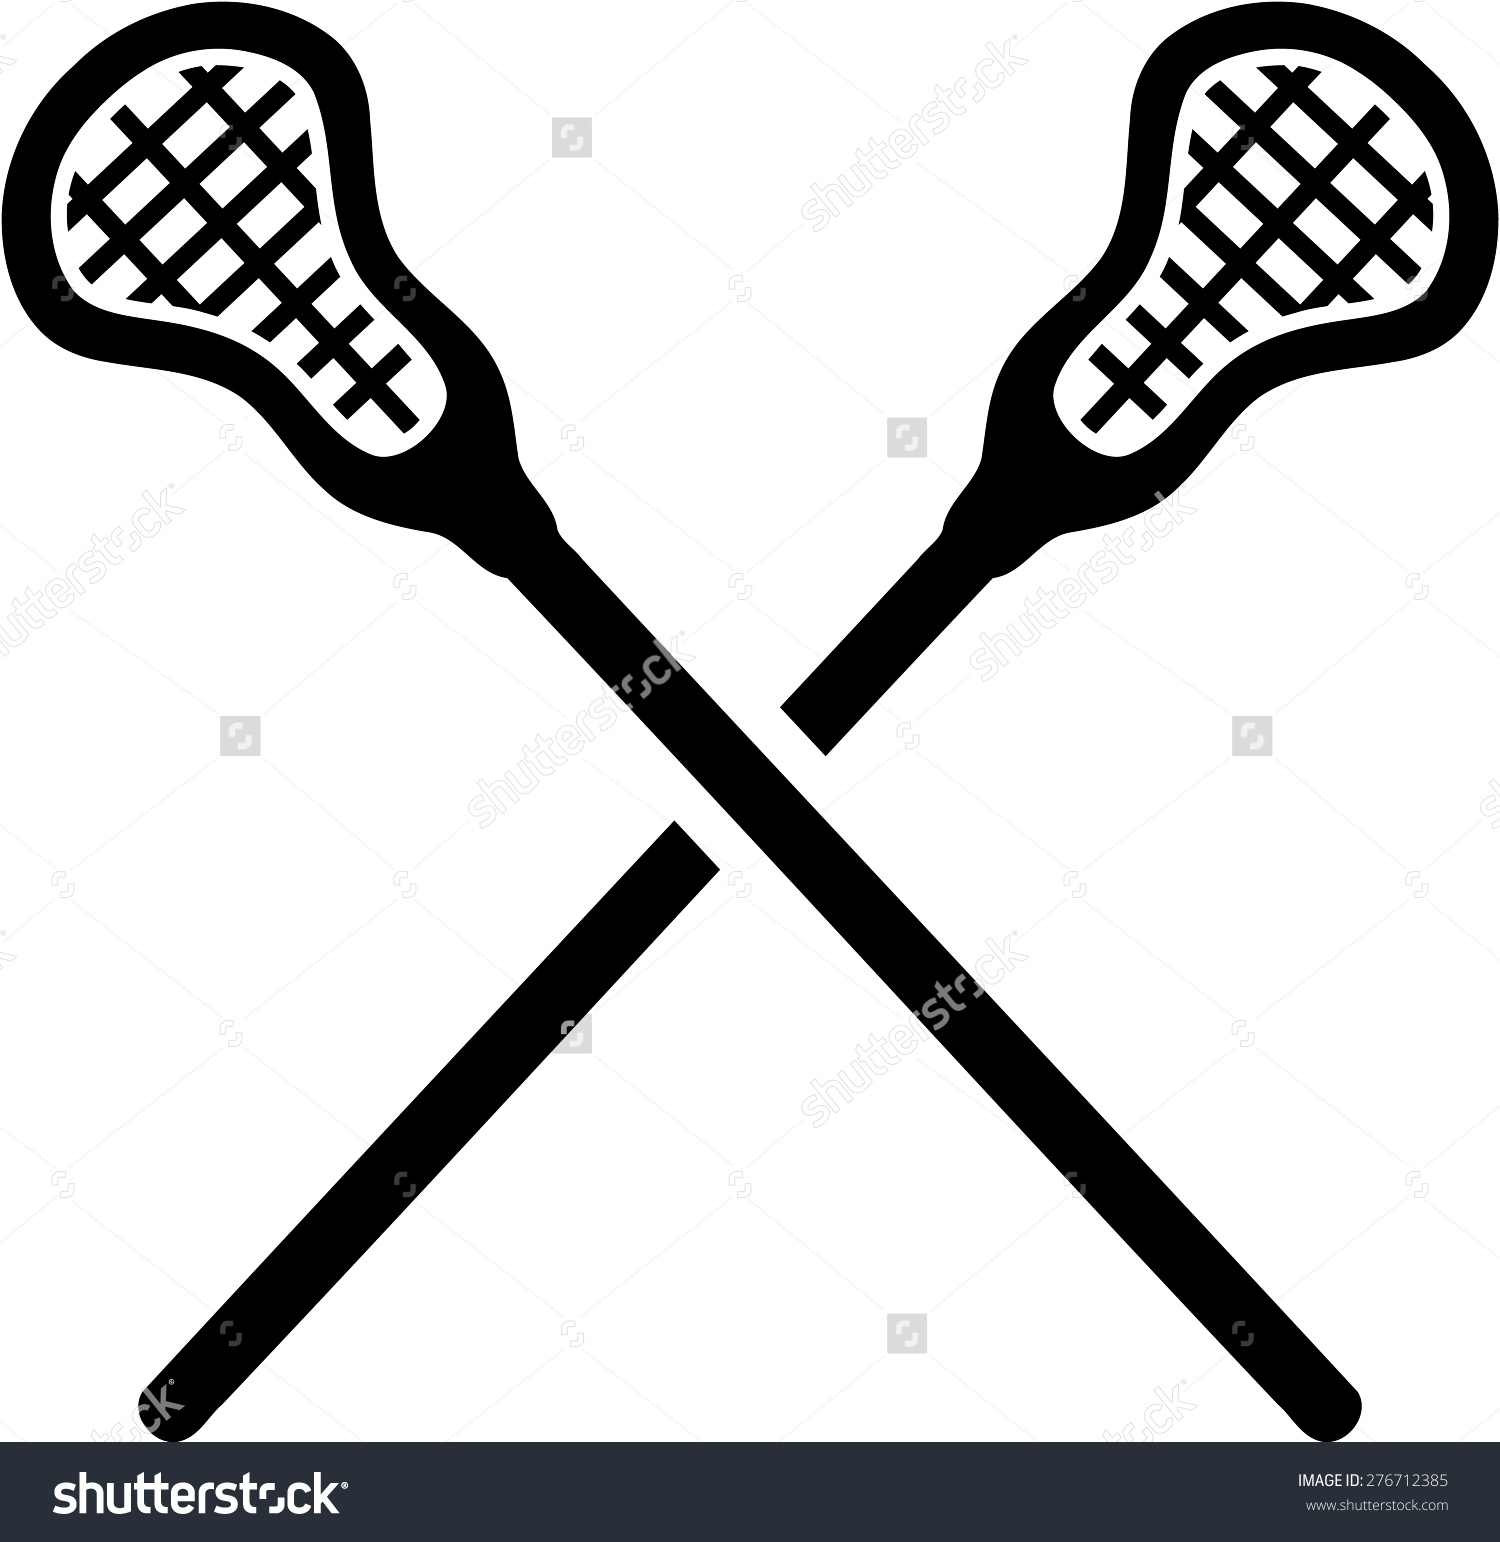 Lacrosse stick clip art clipa